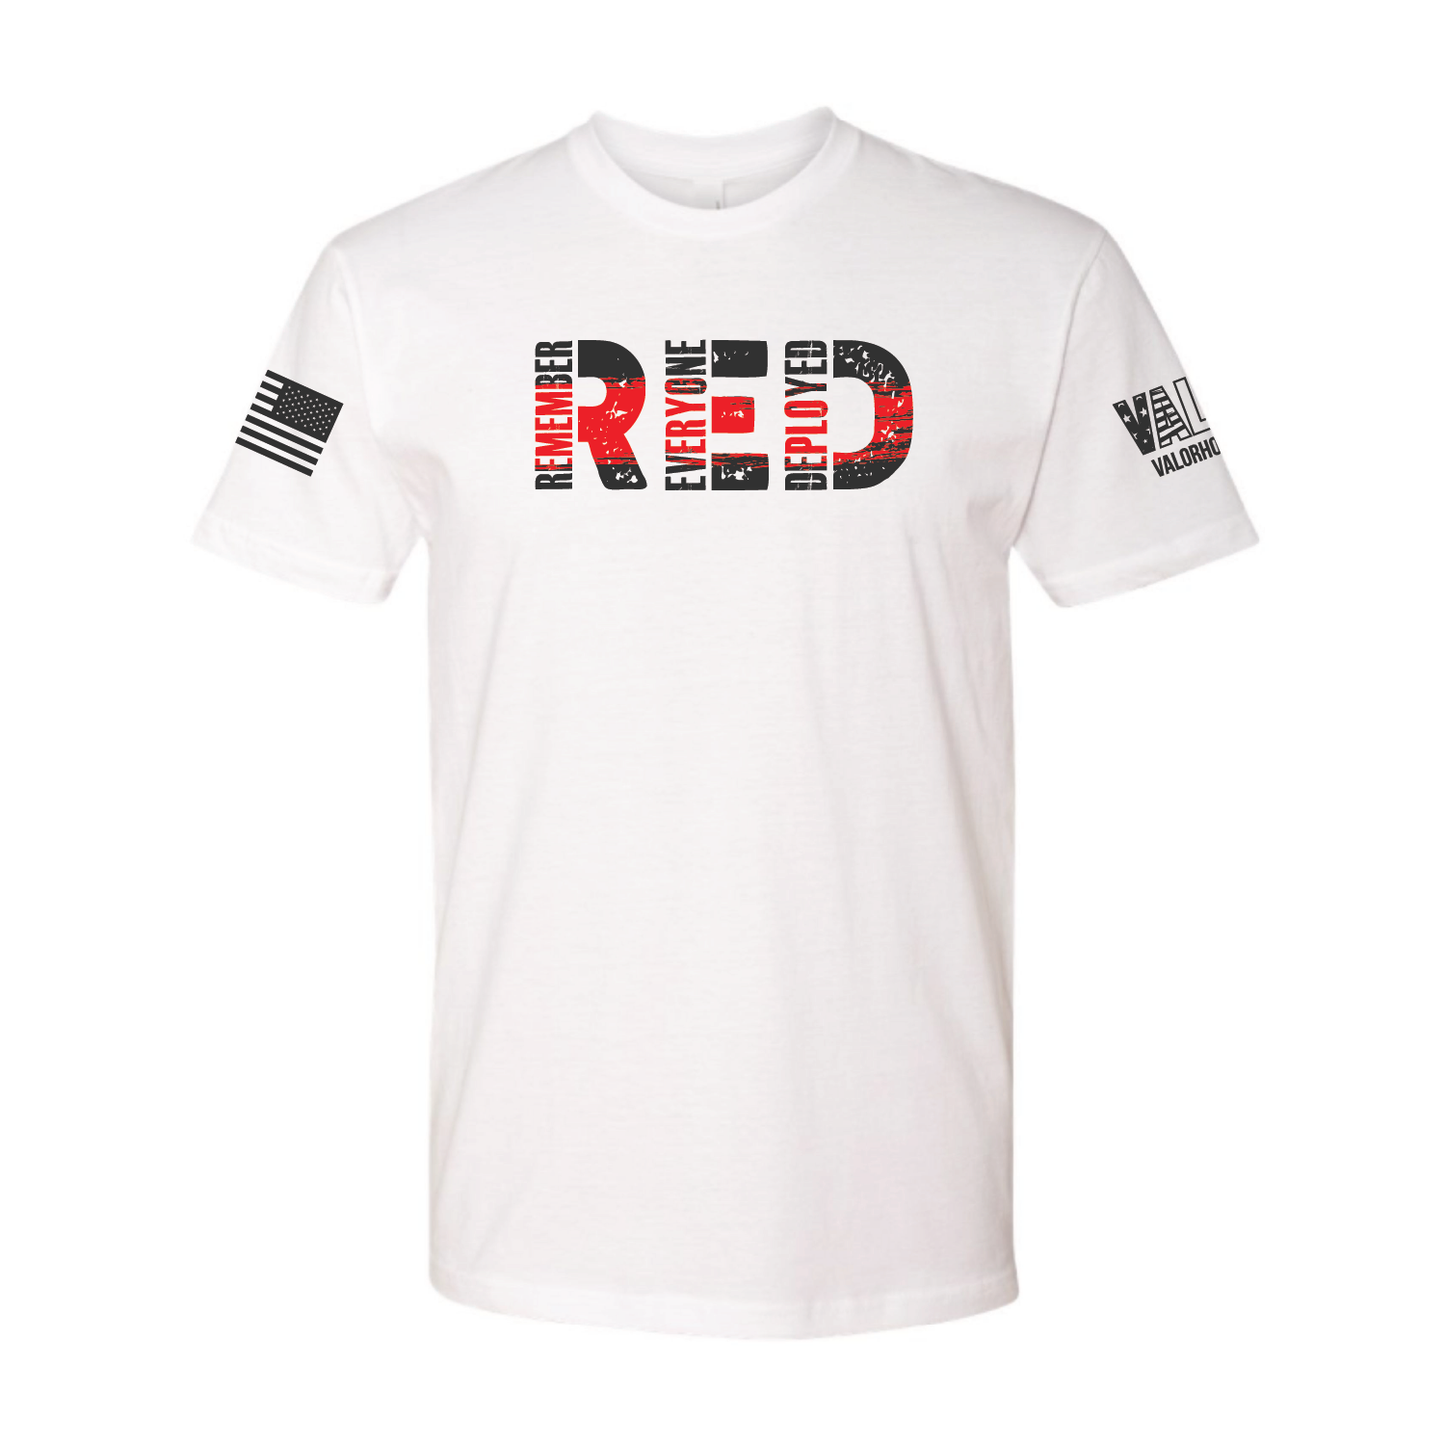 Gentlemen's "R.E.D. Friday v1.0" Shirt